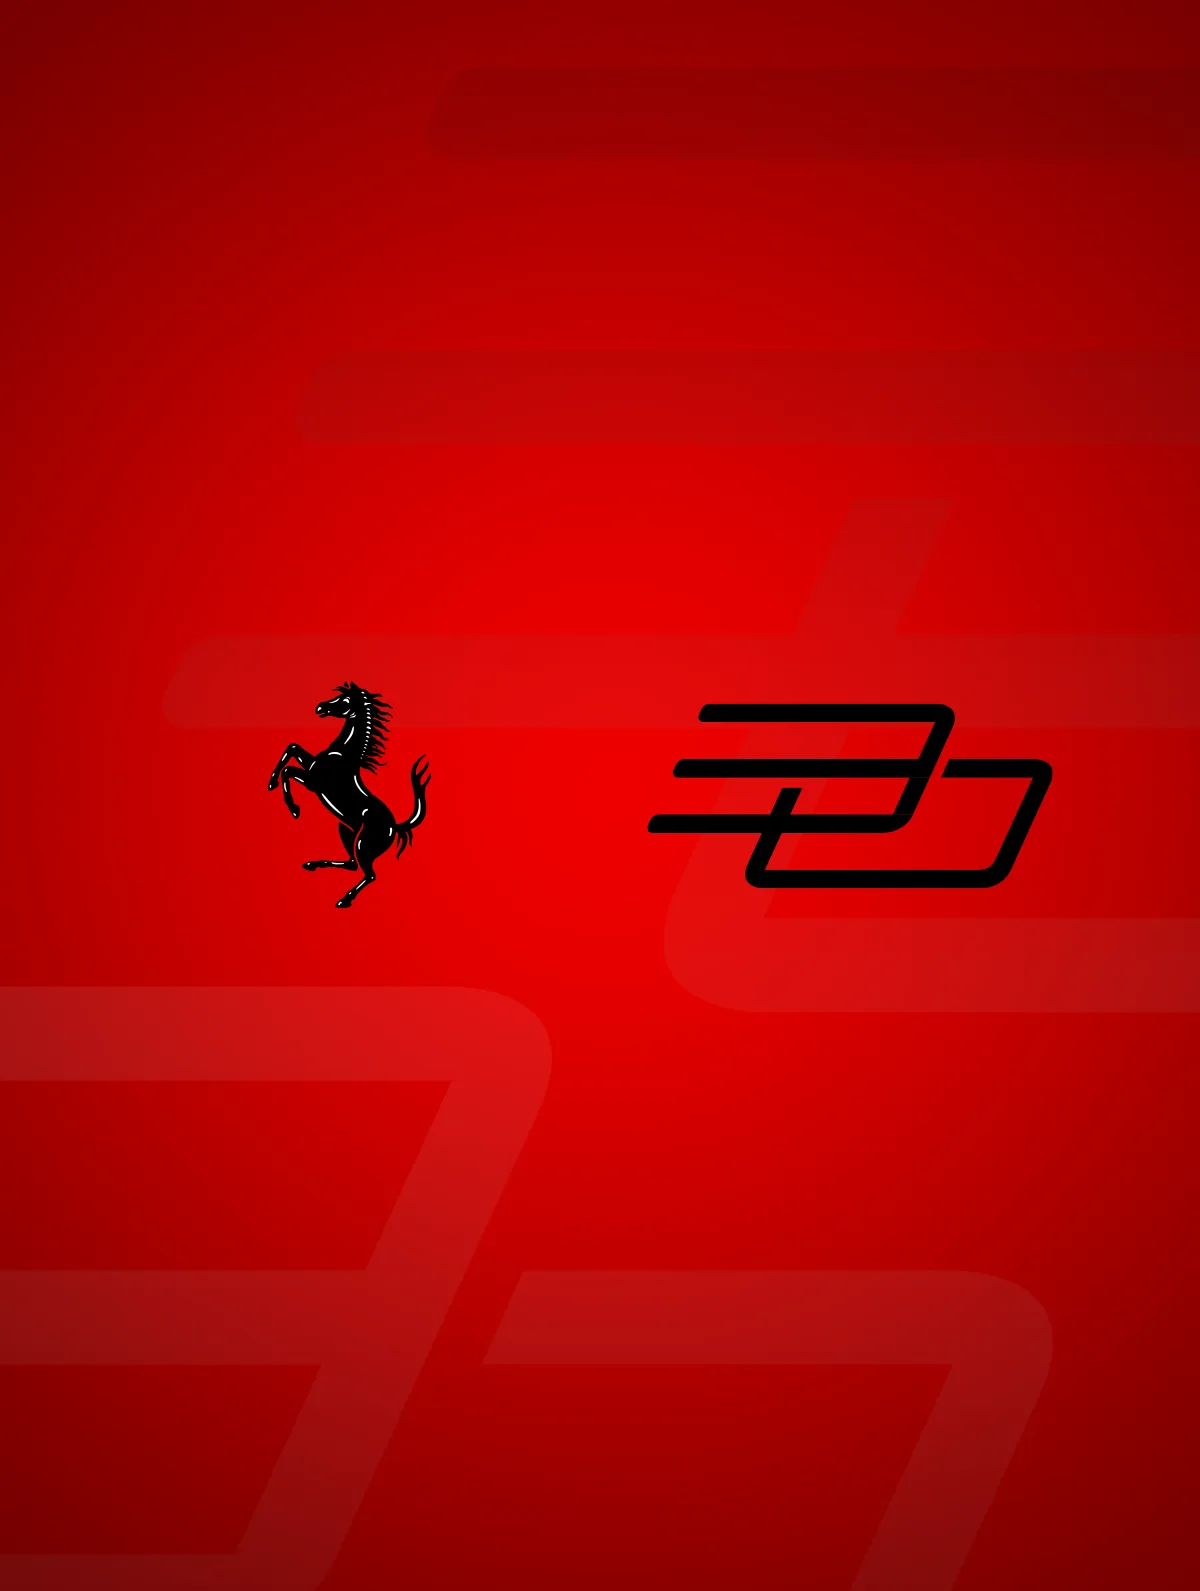 法拉利 - 一匹驰骋中国市场30年的骏马。 - By HDG